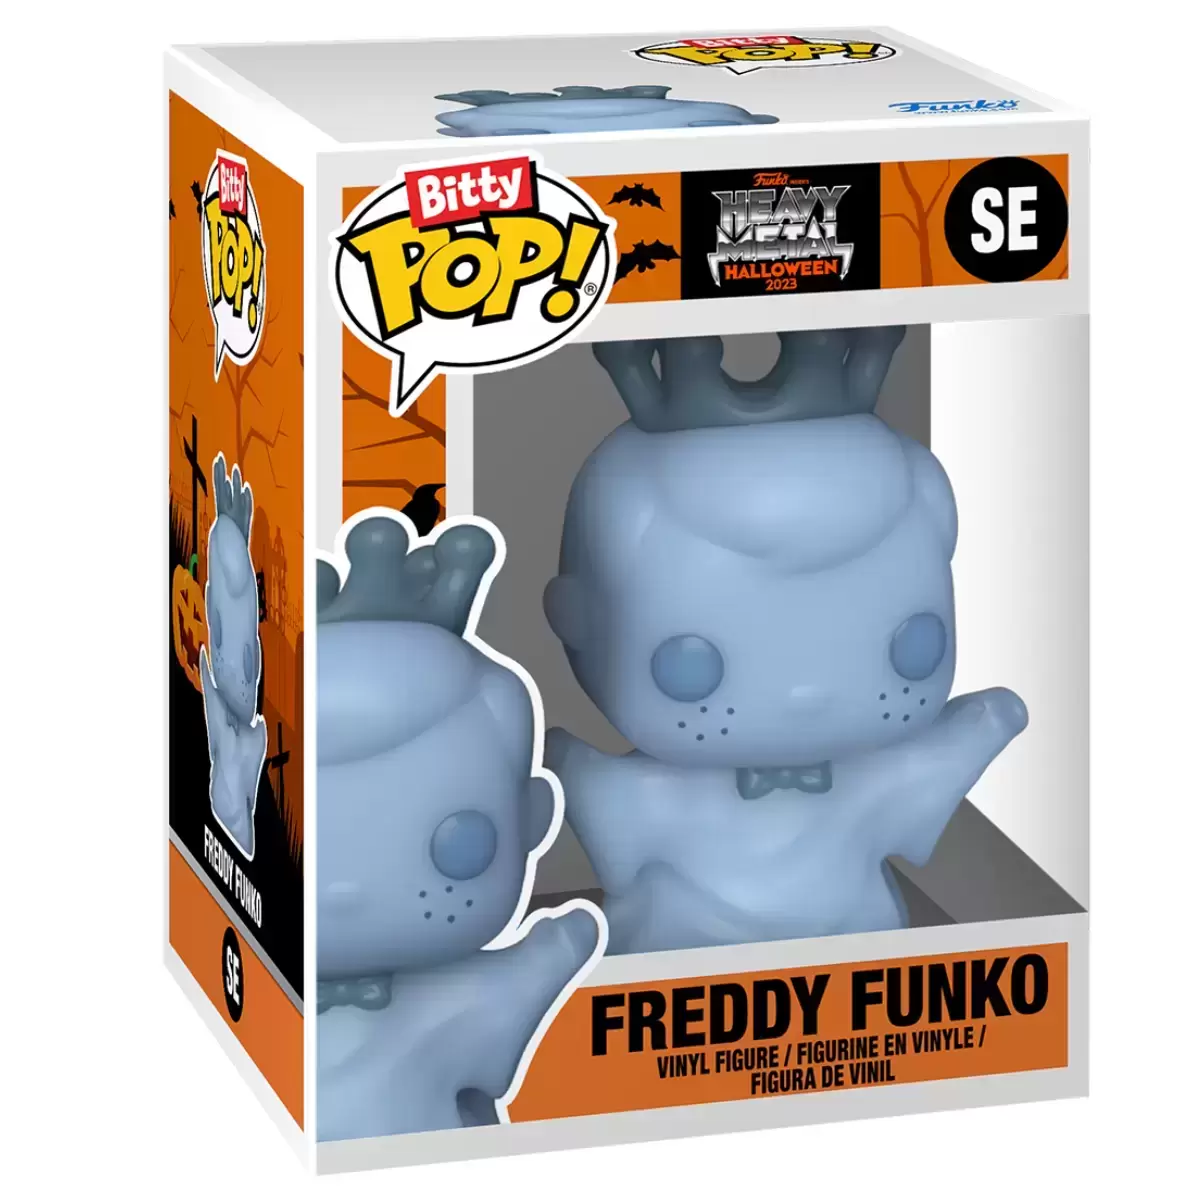 Bitty POP! - Heavy Metal Halloween 2023 - Freddy Funko